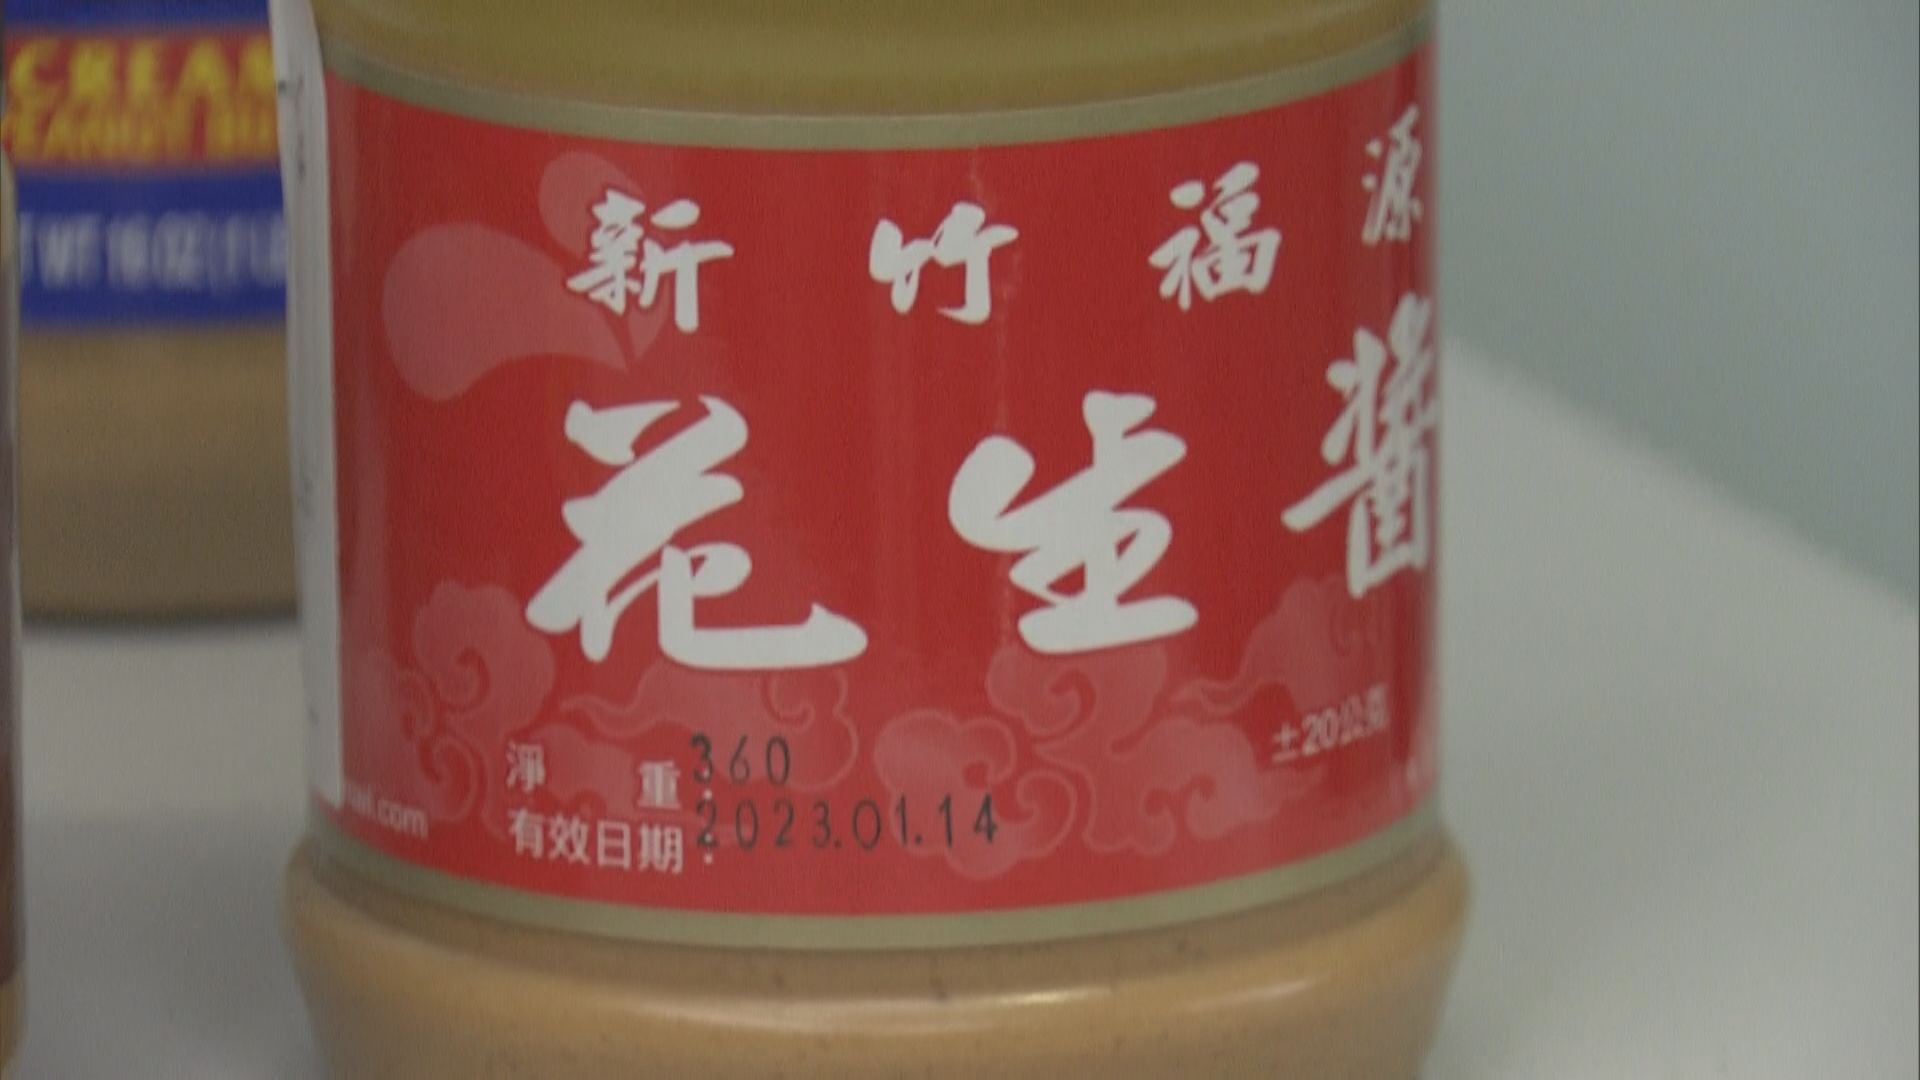 台灣福源花生醬被指毒素超標 質疑消委會用過期樣本測試